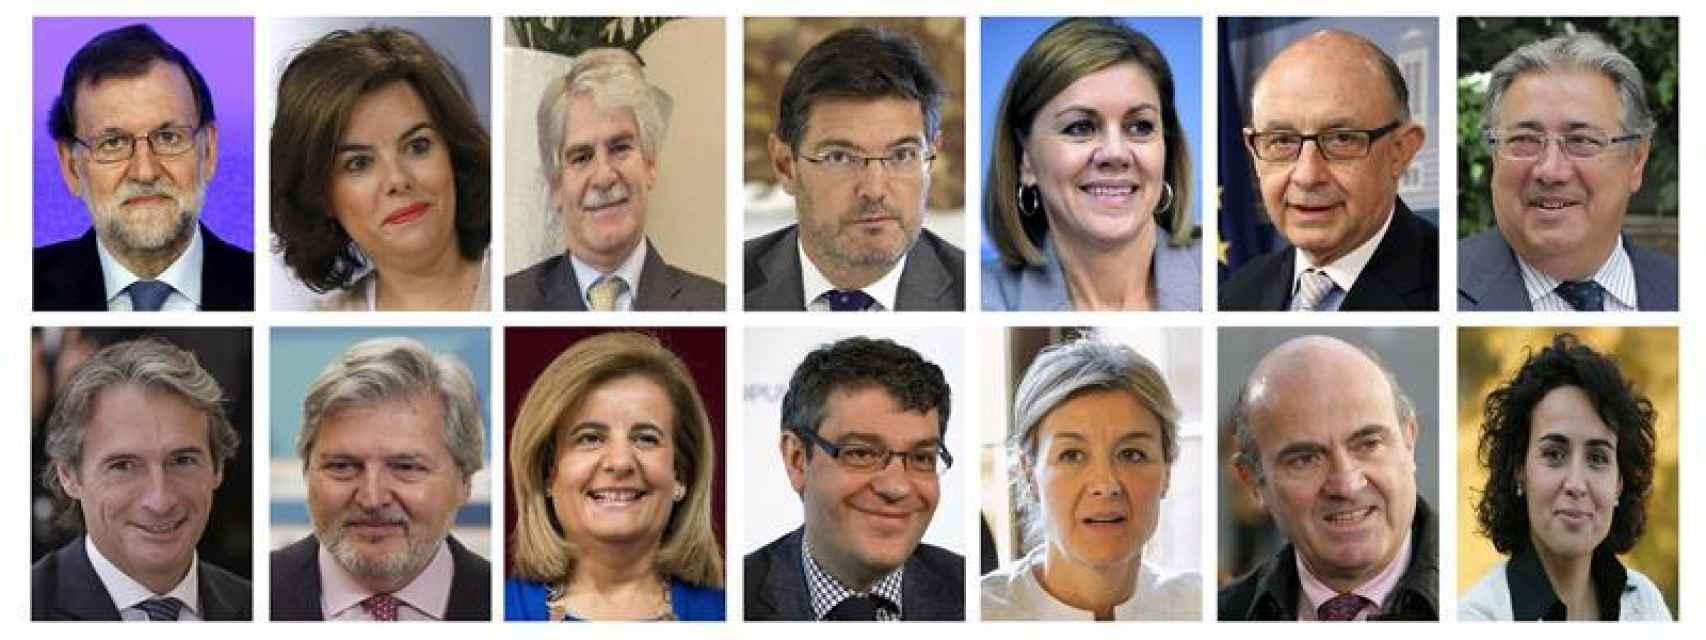 De izquierda a derecha: Rajoy, Santamaría, Dastis, Catalá, Cospedal, Montoro, Zoido, De la Serna, Méndez de Vigo, Bañez, Nadal, Tejerina, Guindos y Montserrat.